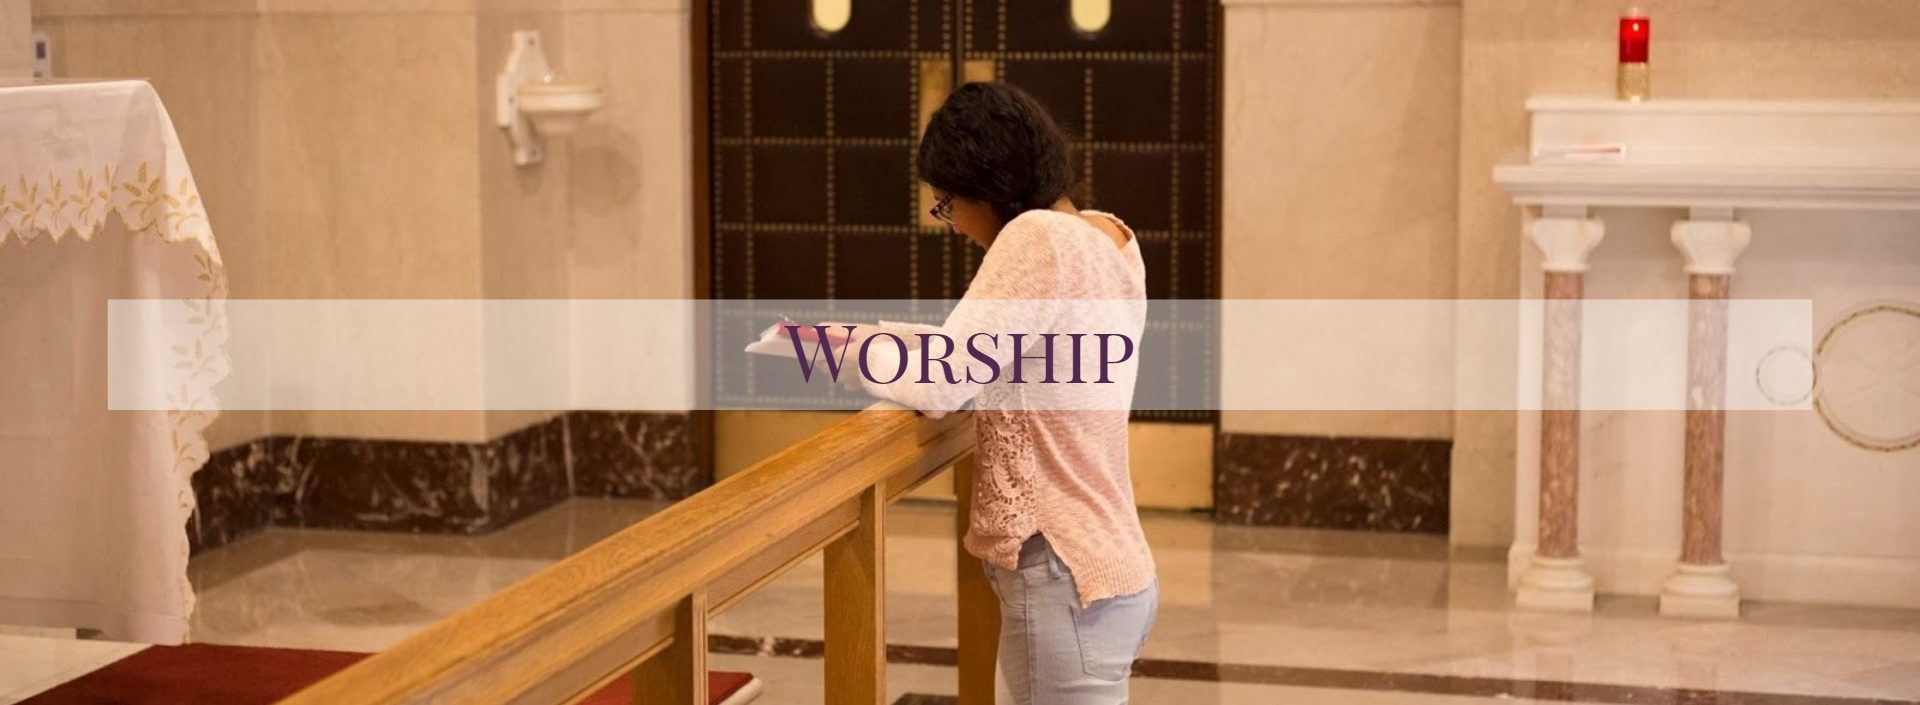 Worship The Catholic Community At Johns Hopkins University